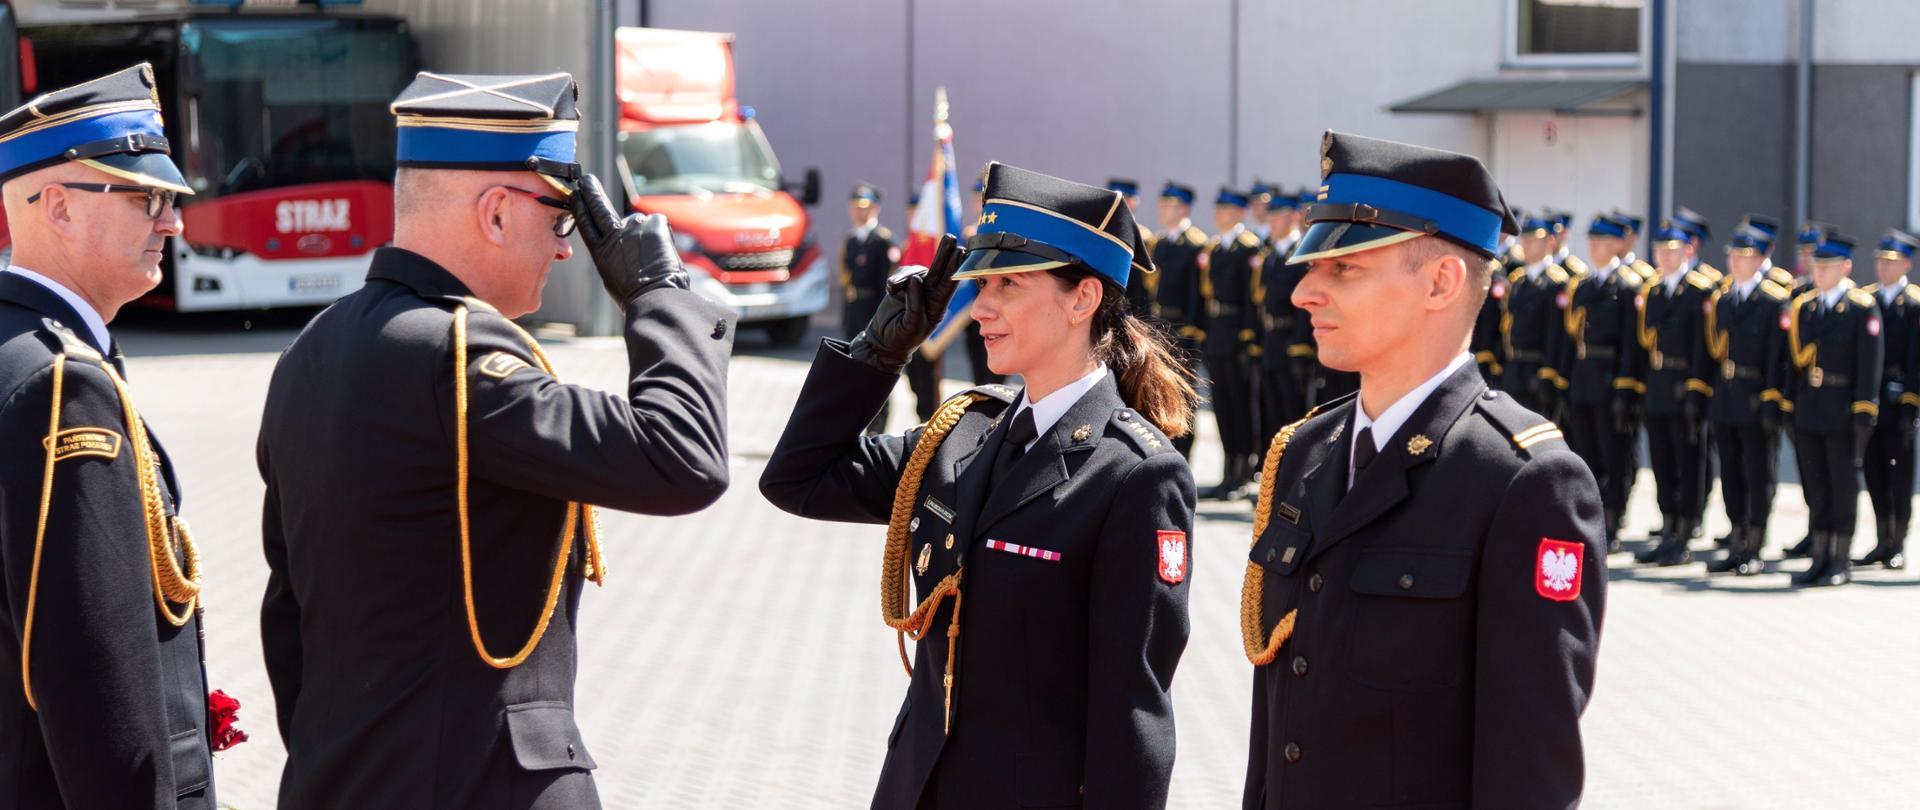 Zastępca komendanta głównego PSP salutuje do wyróżnionej kobiety oficer.